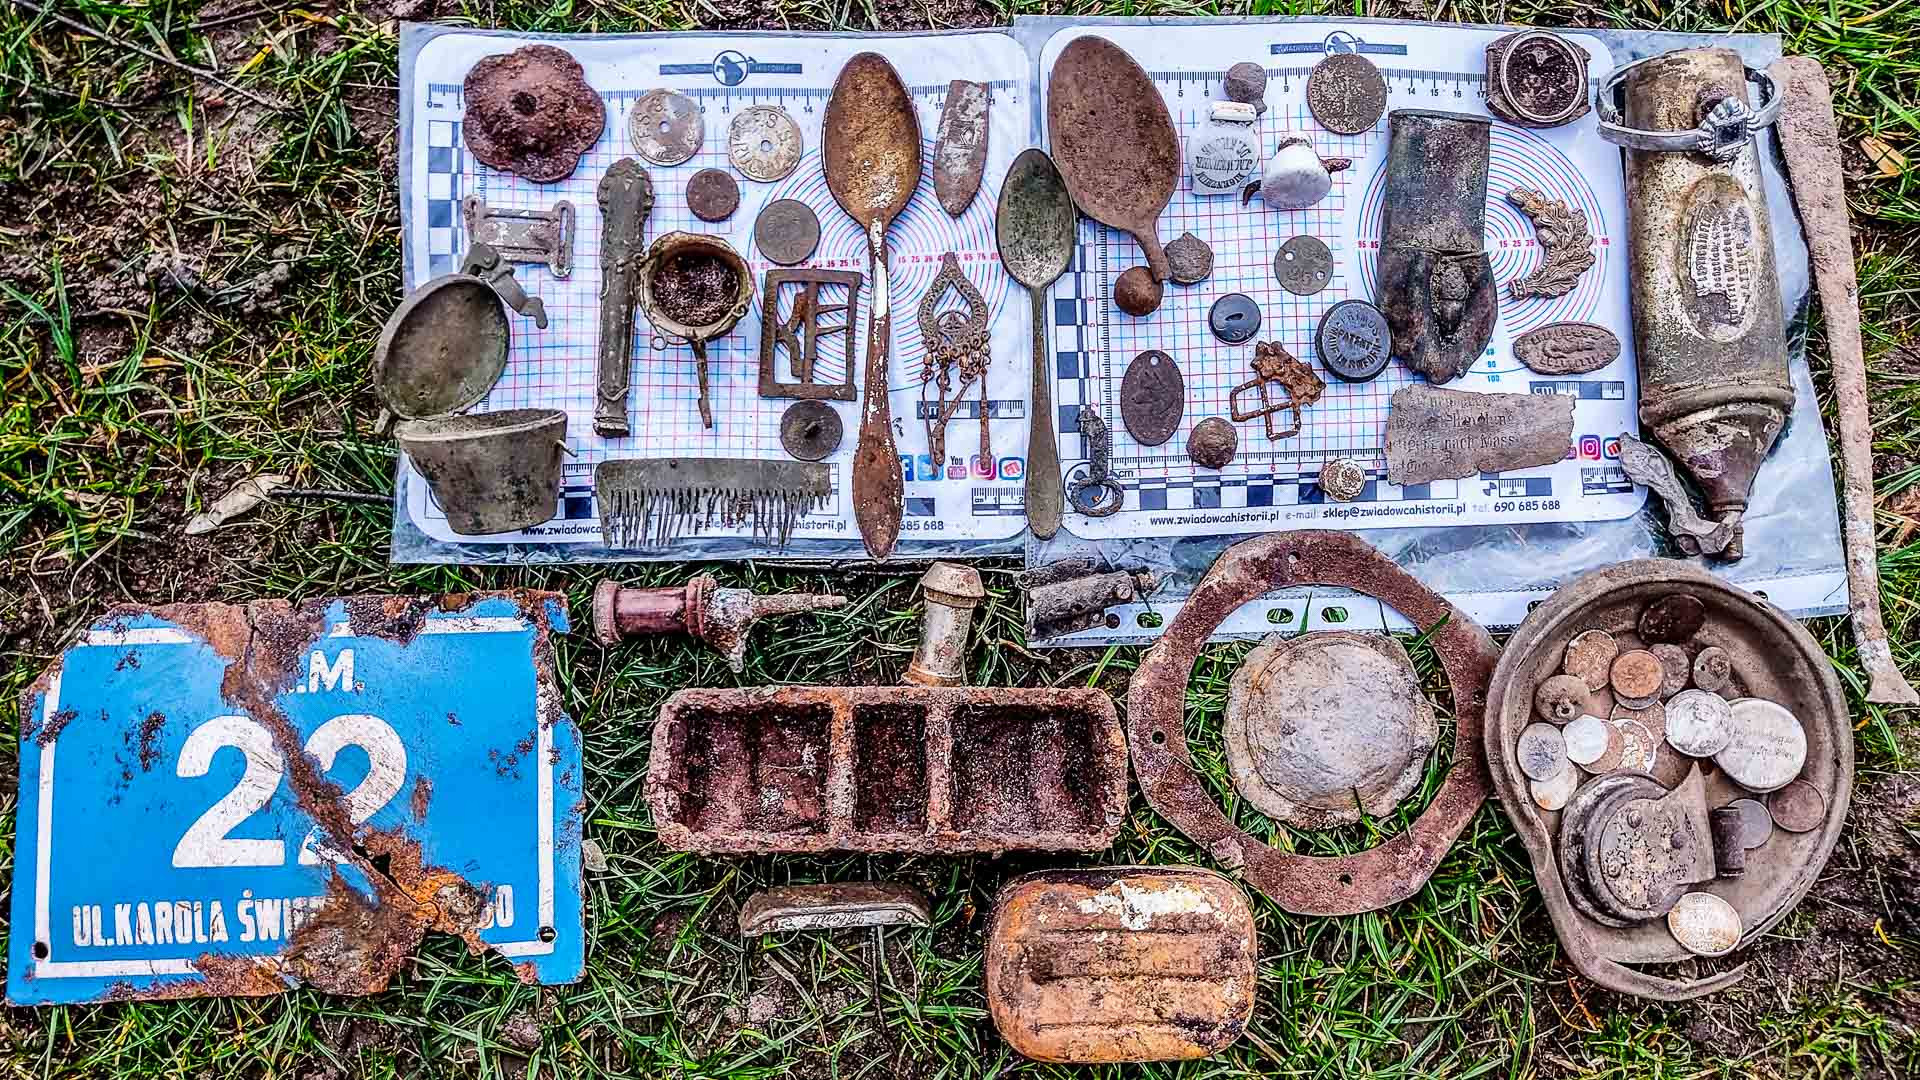 Kilkadziesiąt odnalezionych artefaktów. To wszystko odkryto w ten weekend w dwóch miejscach